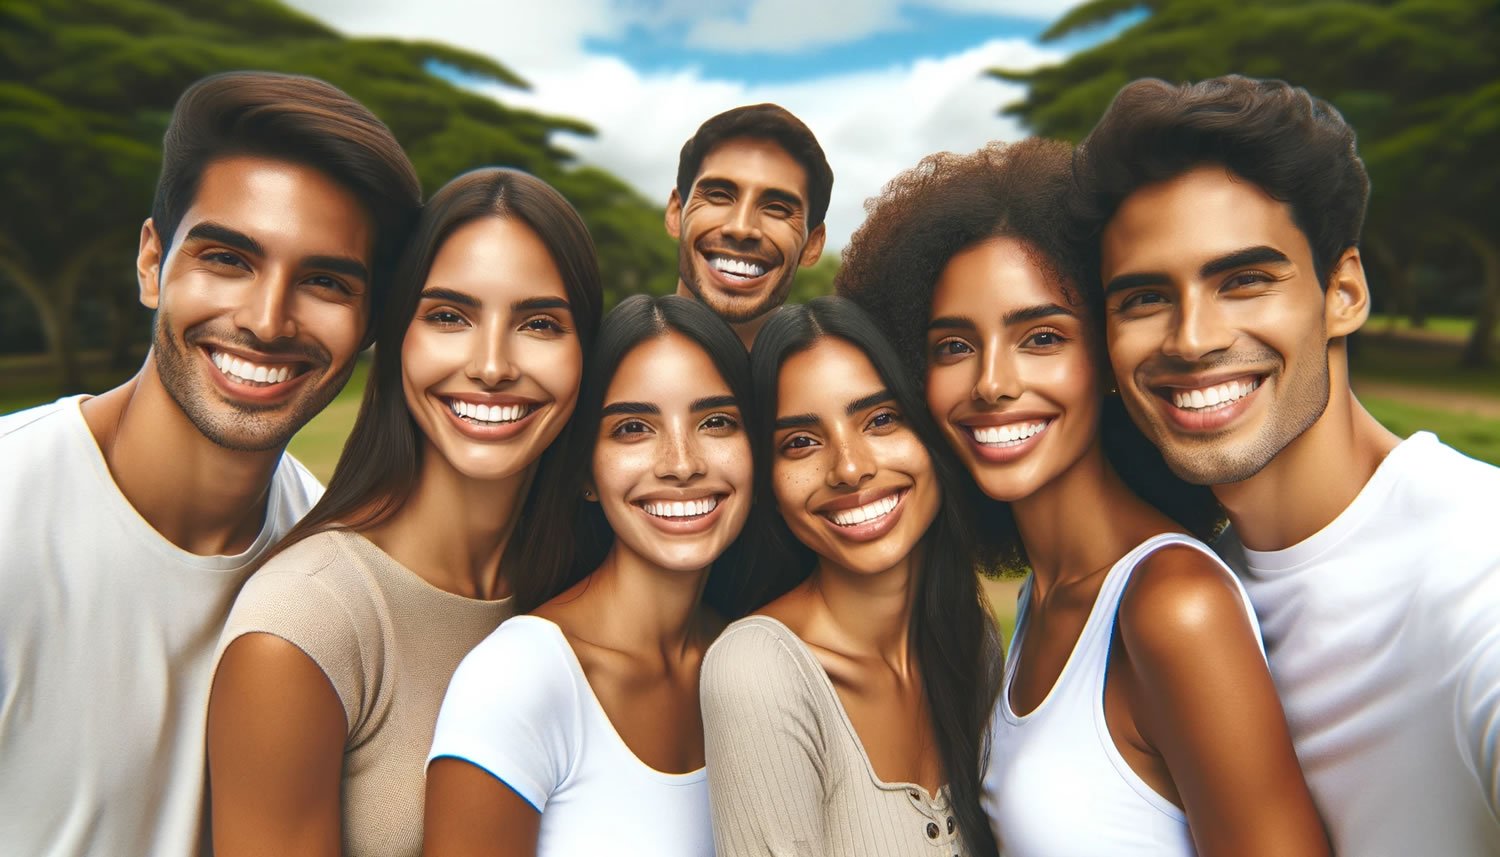 Foto de uma família Latina feliz, com etnias variadas, sorrindo em um parque verdejante, simbolizando a saúde dental assegurada por um plano odontológico.